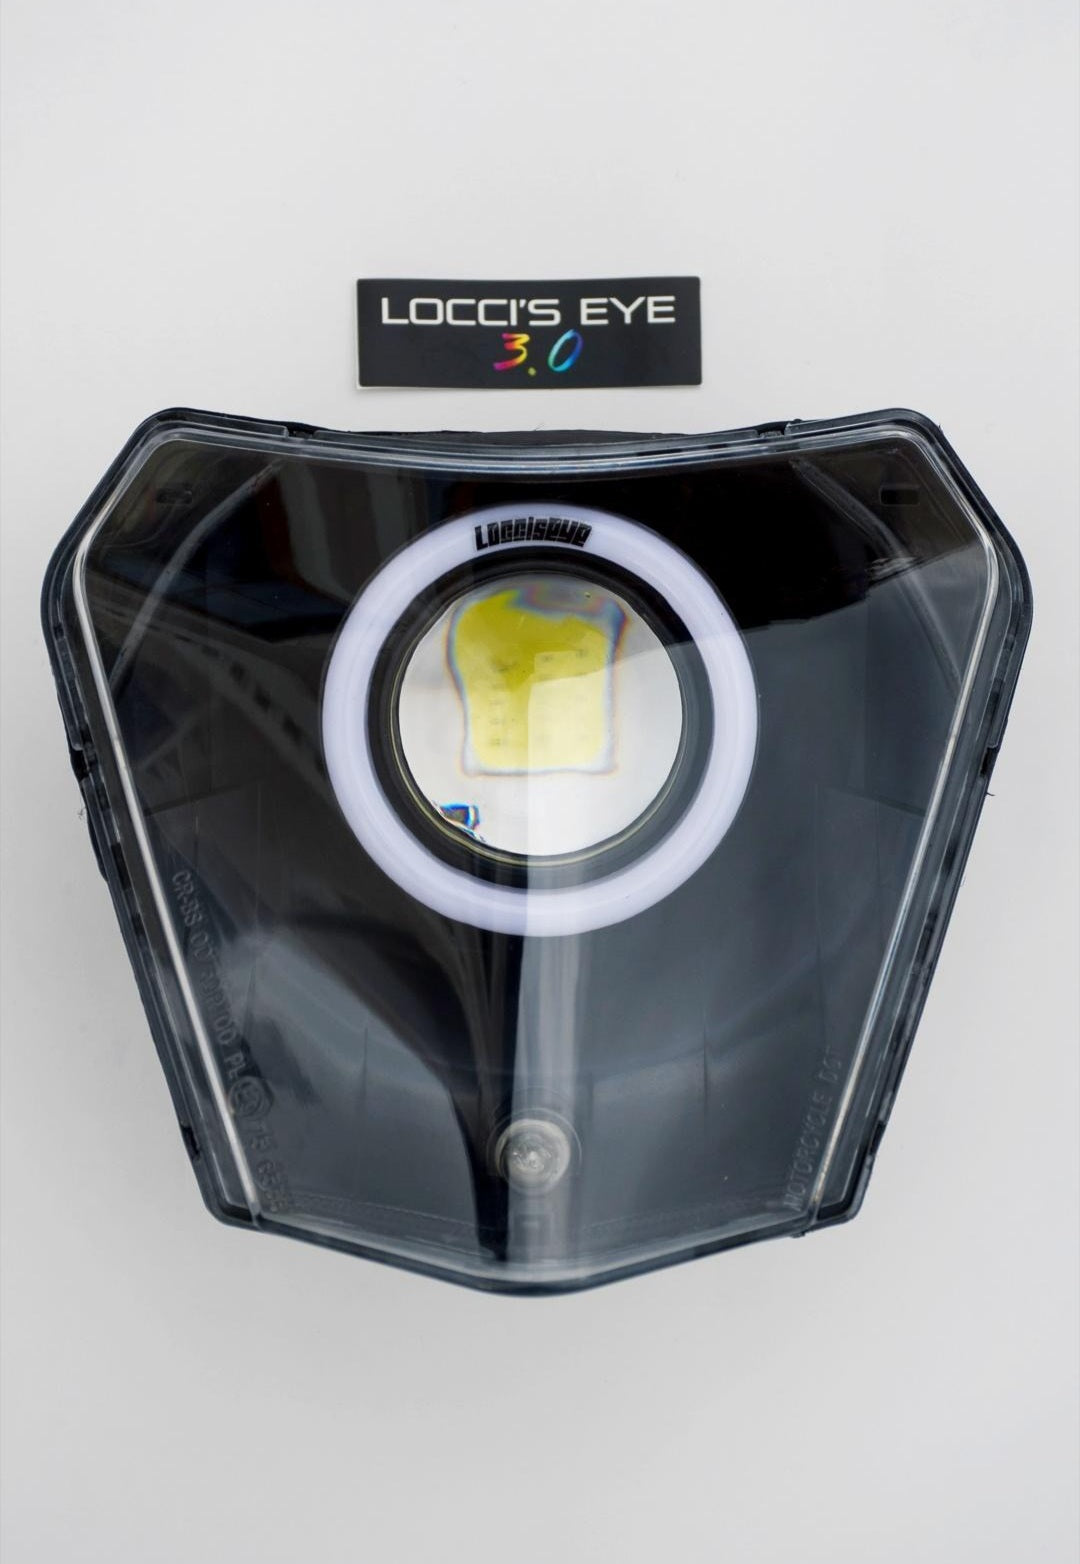 Loccis eye 3.0 RGB - RL_RacingStore